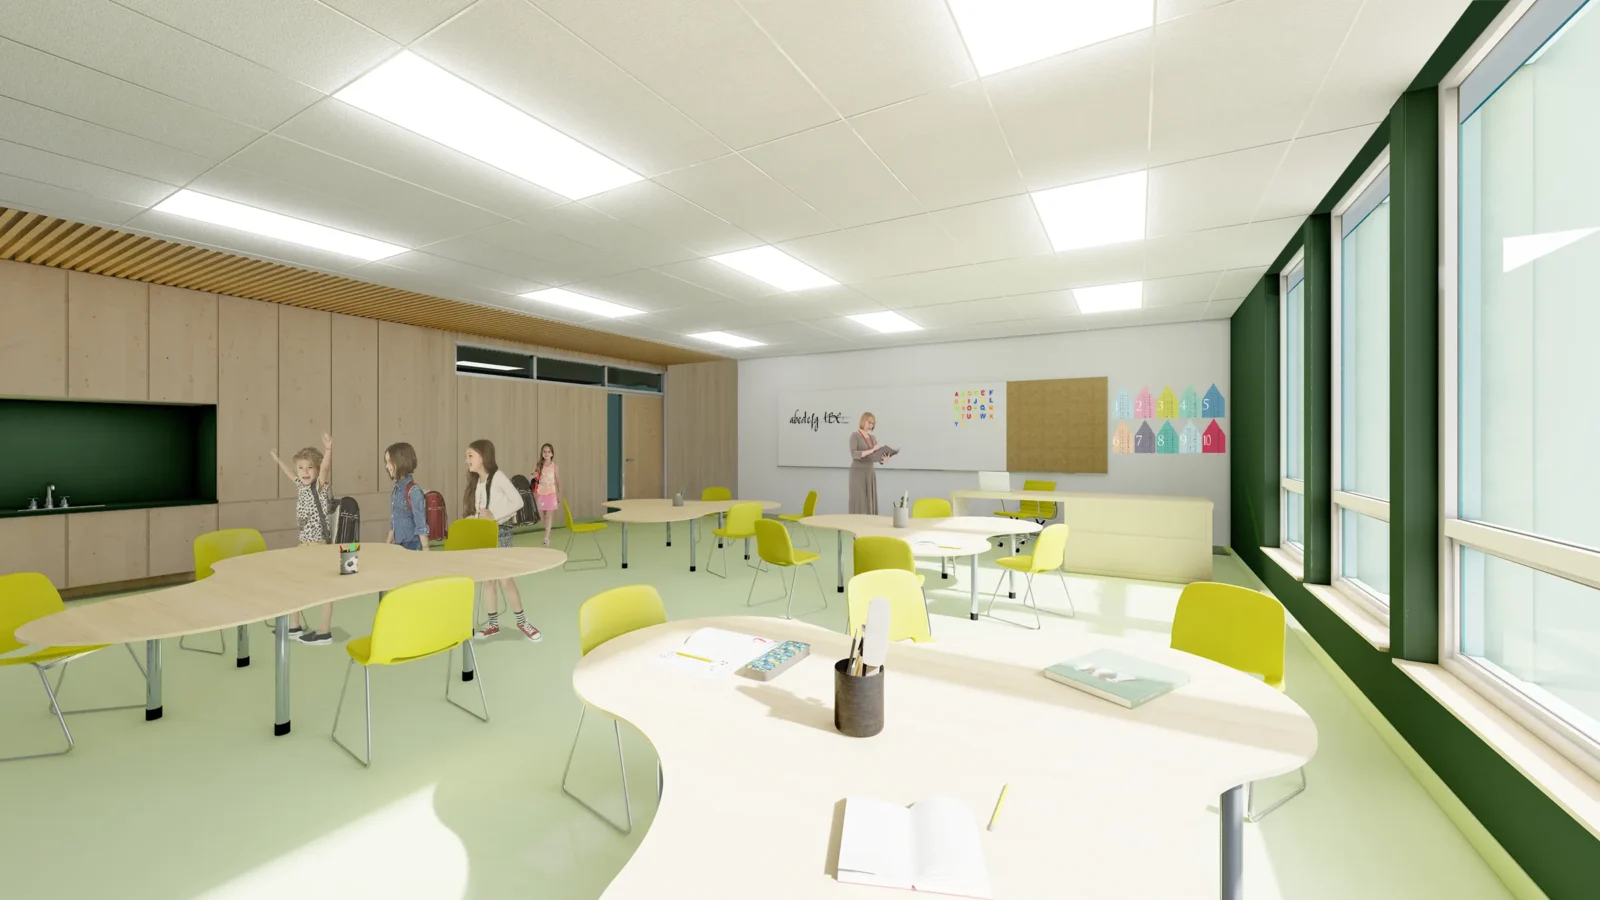 Rendu architectural 3D à l'intérieur d'une classe d'école primaire